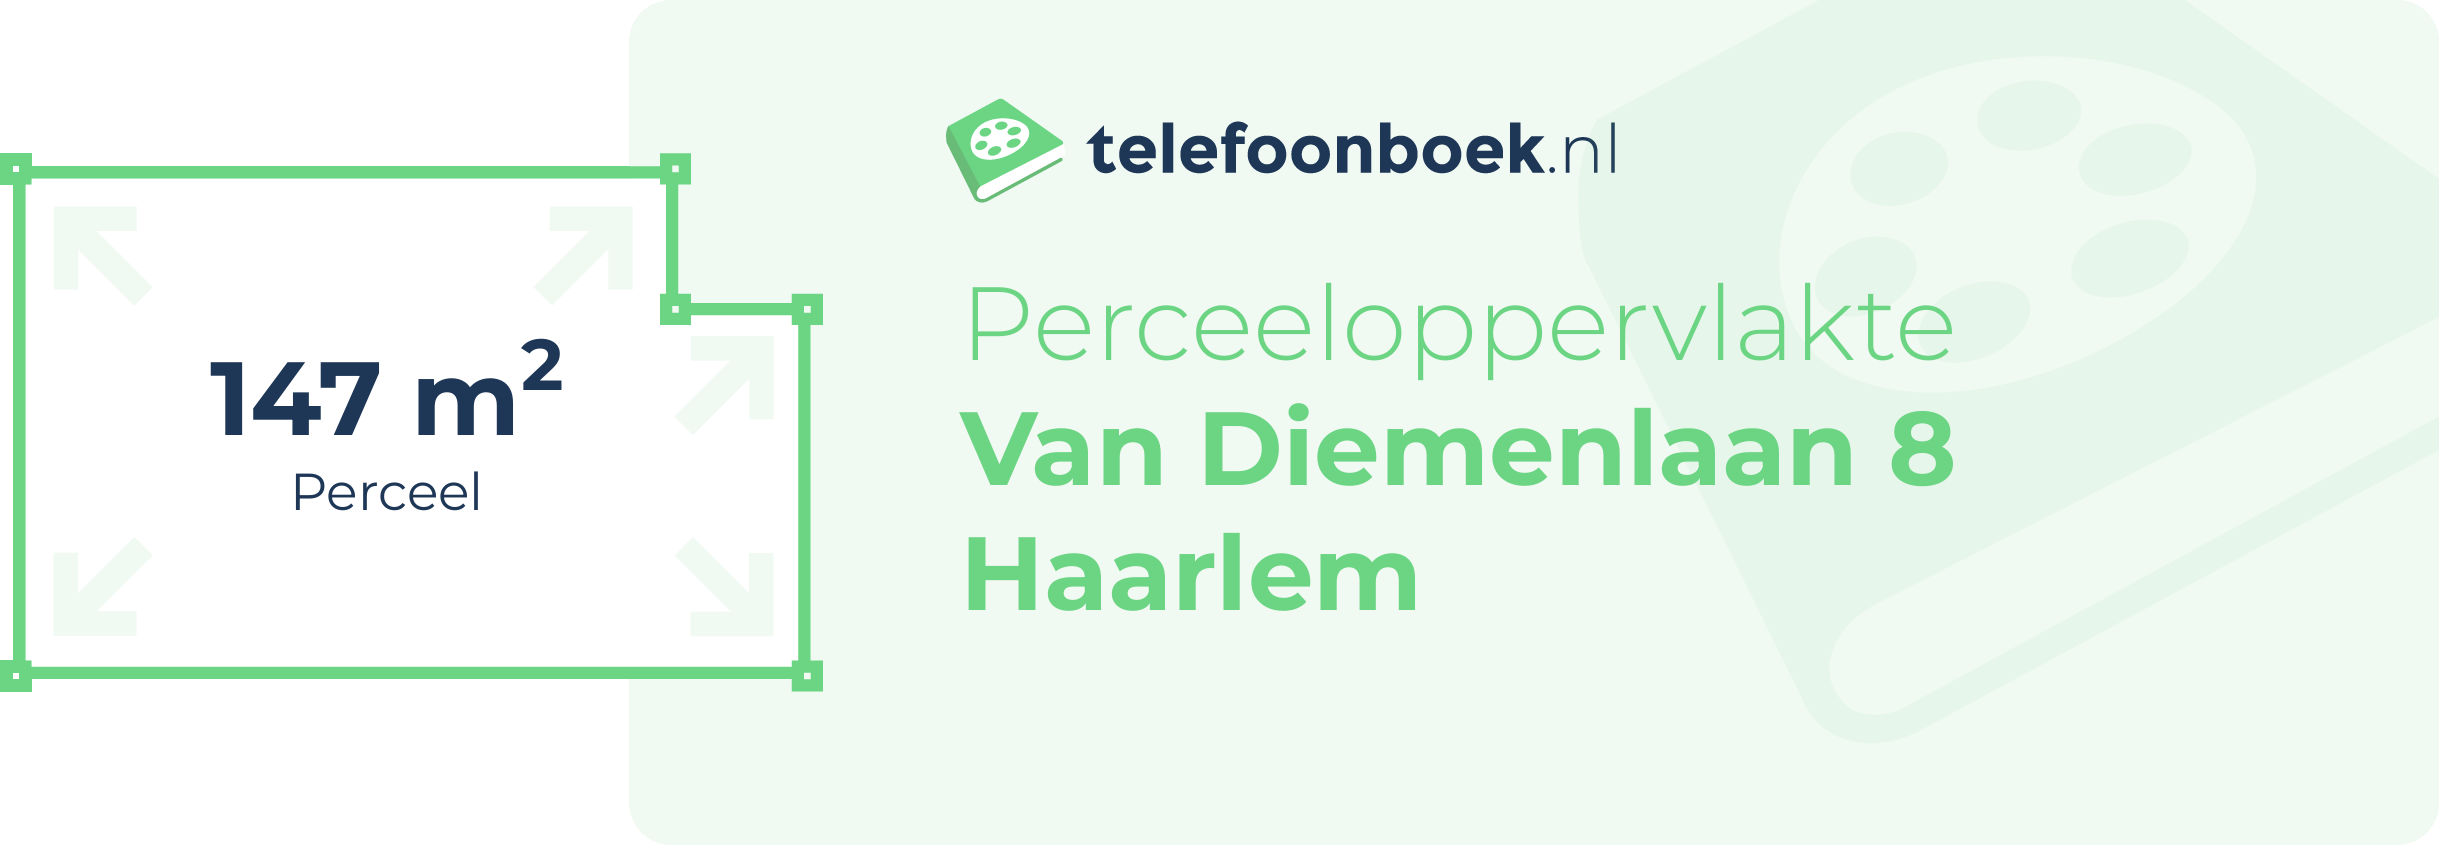 Perceeloppervlakte Van Diemenlaan 8 Haarlem